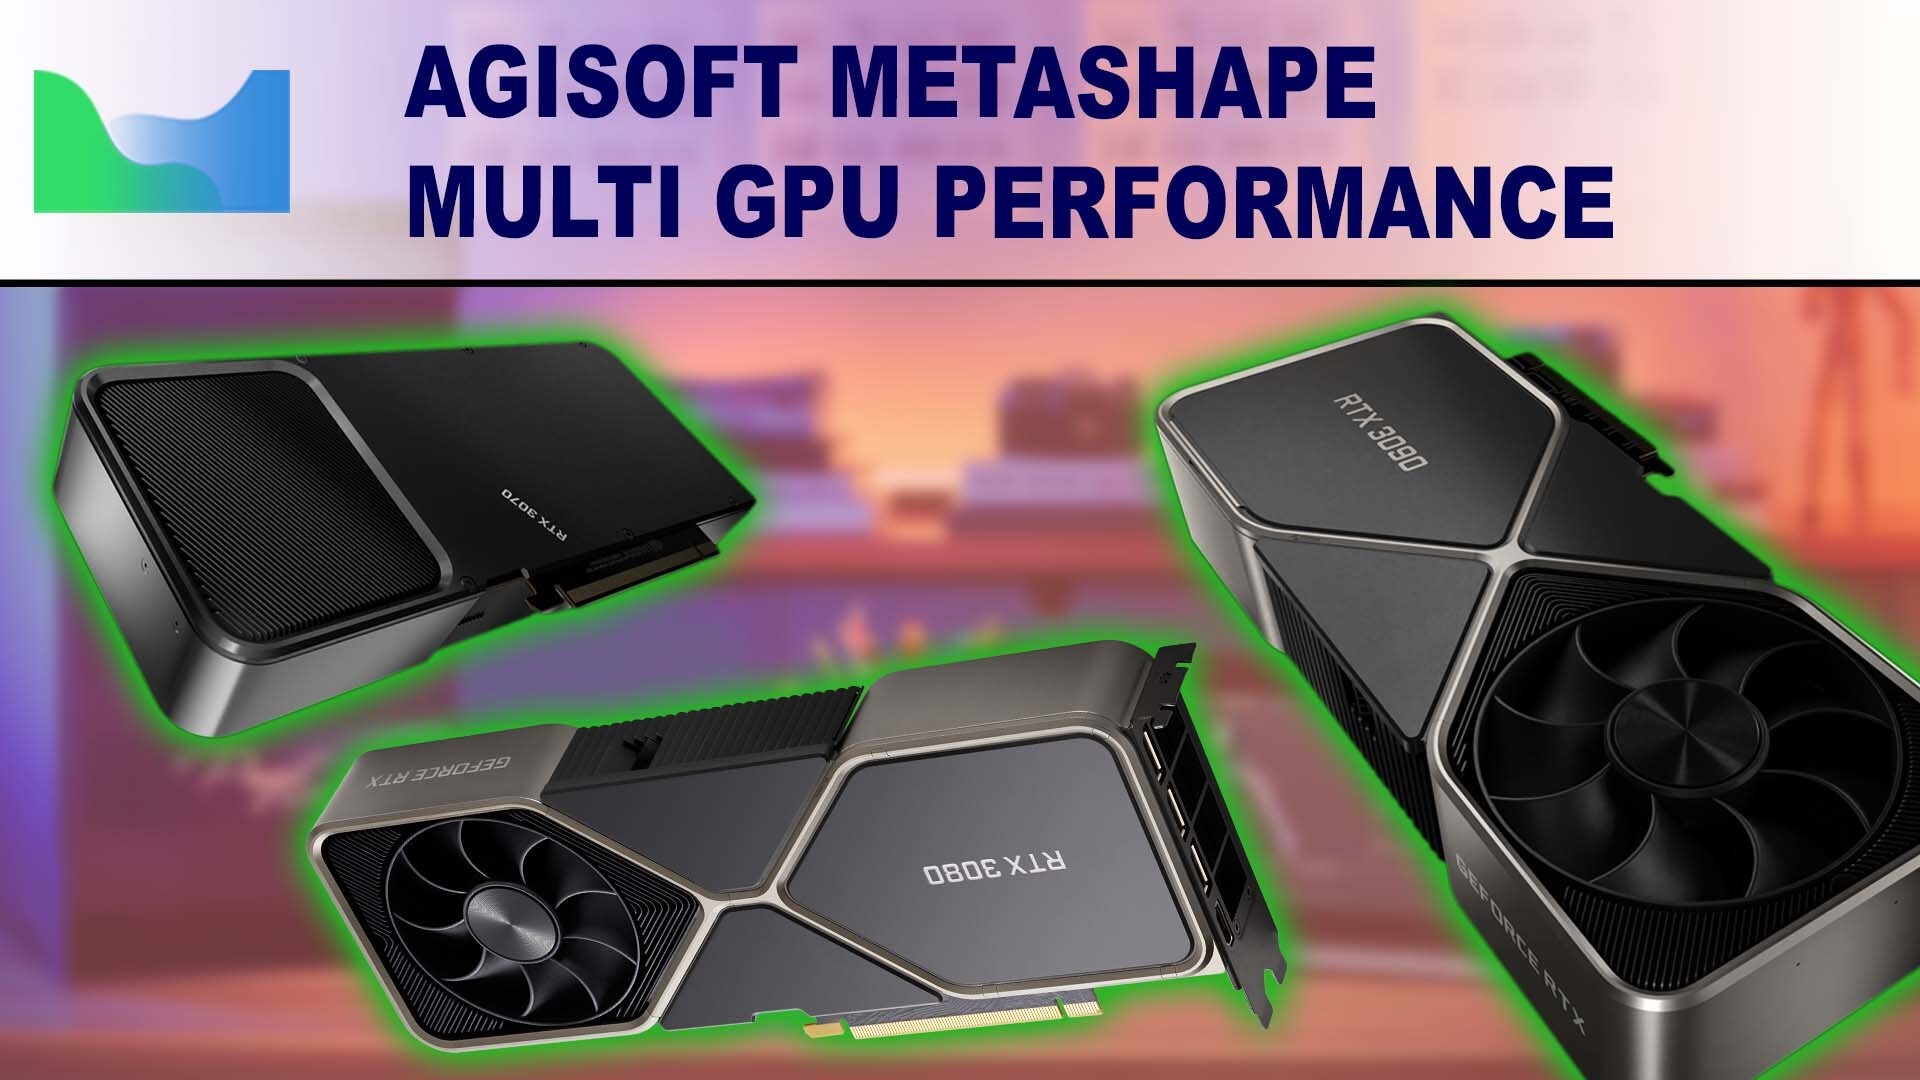 Agisoft Metashape Multi GPU Performance with NVIDIA GeForce RTX 30 Series